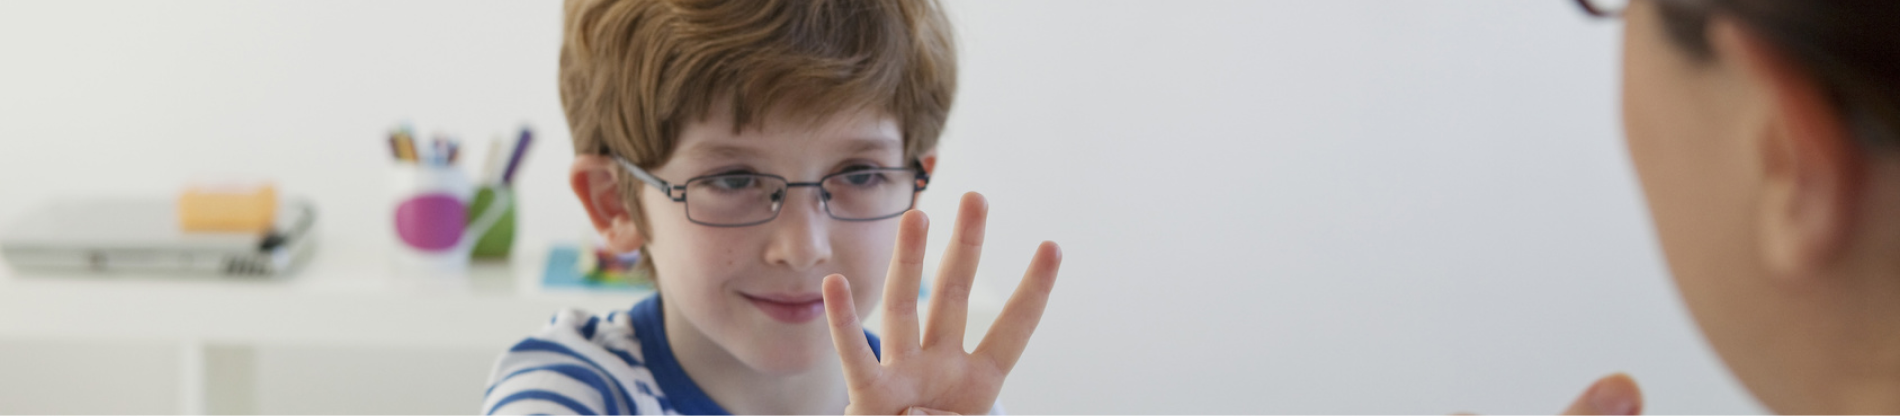 Chłopiec pokazujący liczbę cztery na palcach. 